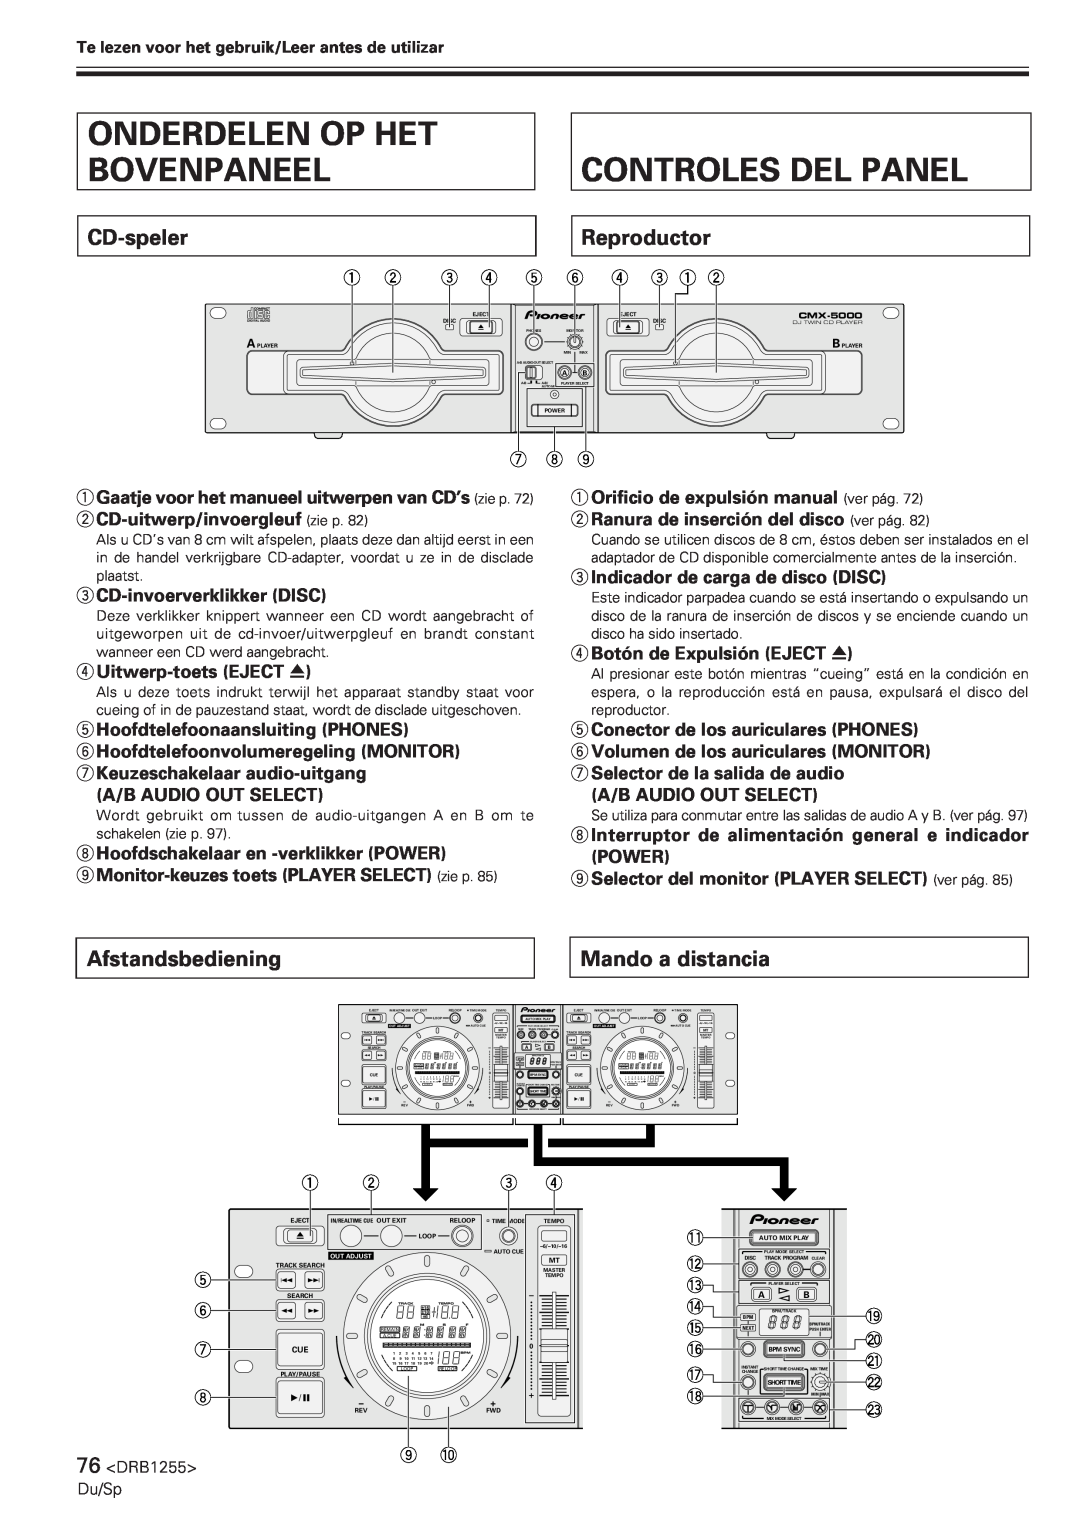 Pioneer CMX-5000 manual Onderdelen Op Het Bovenpaneel, Controles Del Panel, CD-speler, Reproductor, Afstandsbediening 